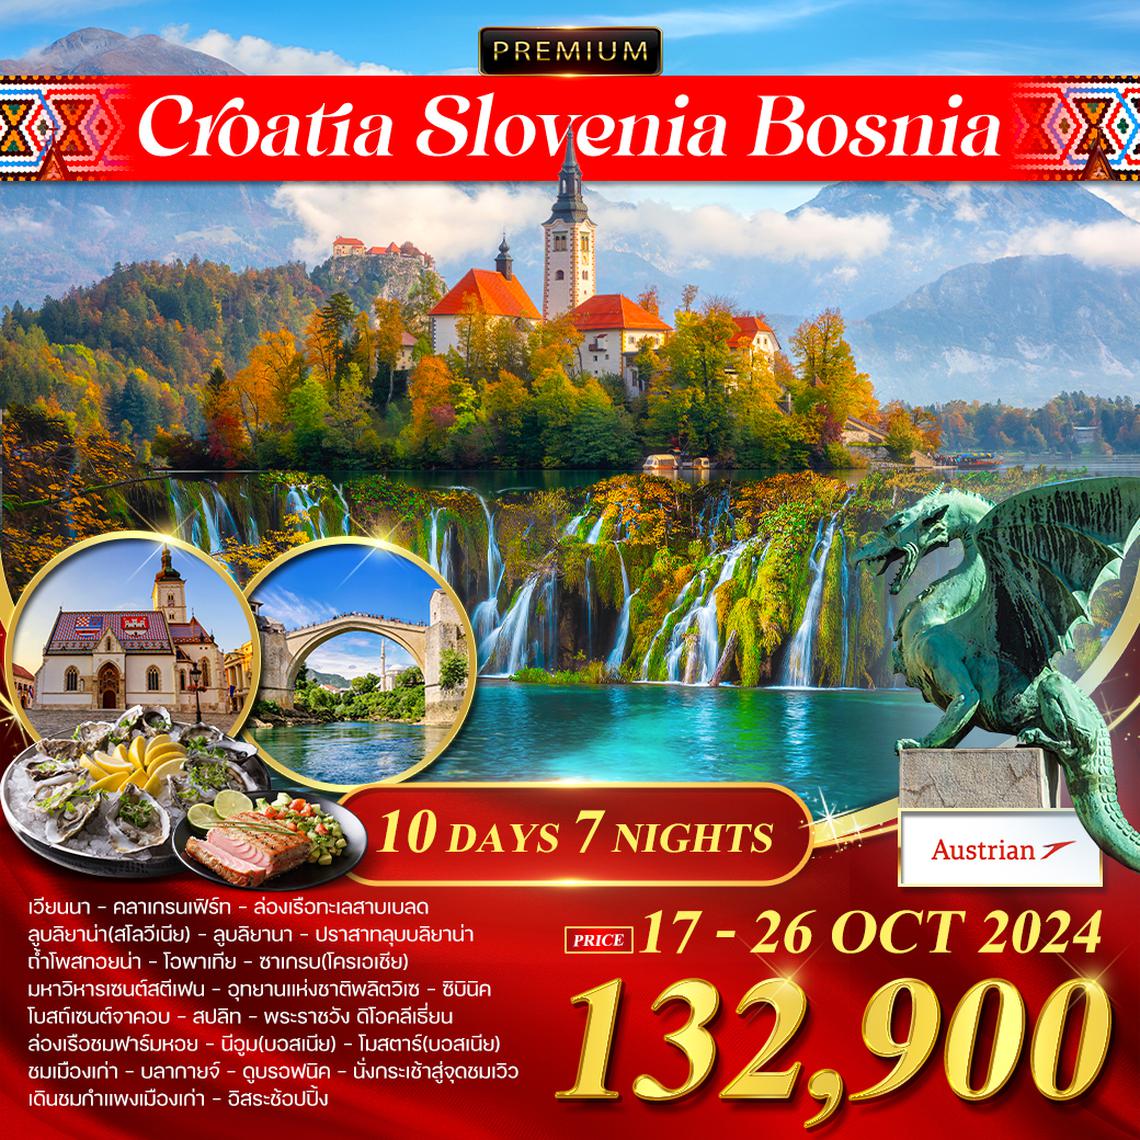 โปรแกรม โครเอเชีย สโลเวเนีย บอสเนีย 10 วัน (OS)